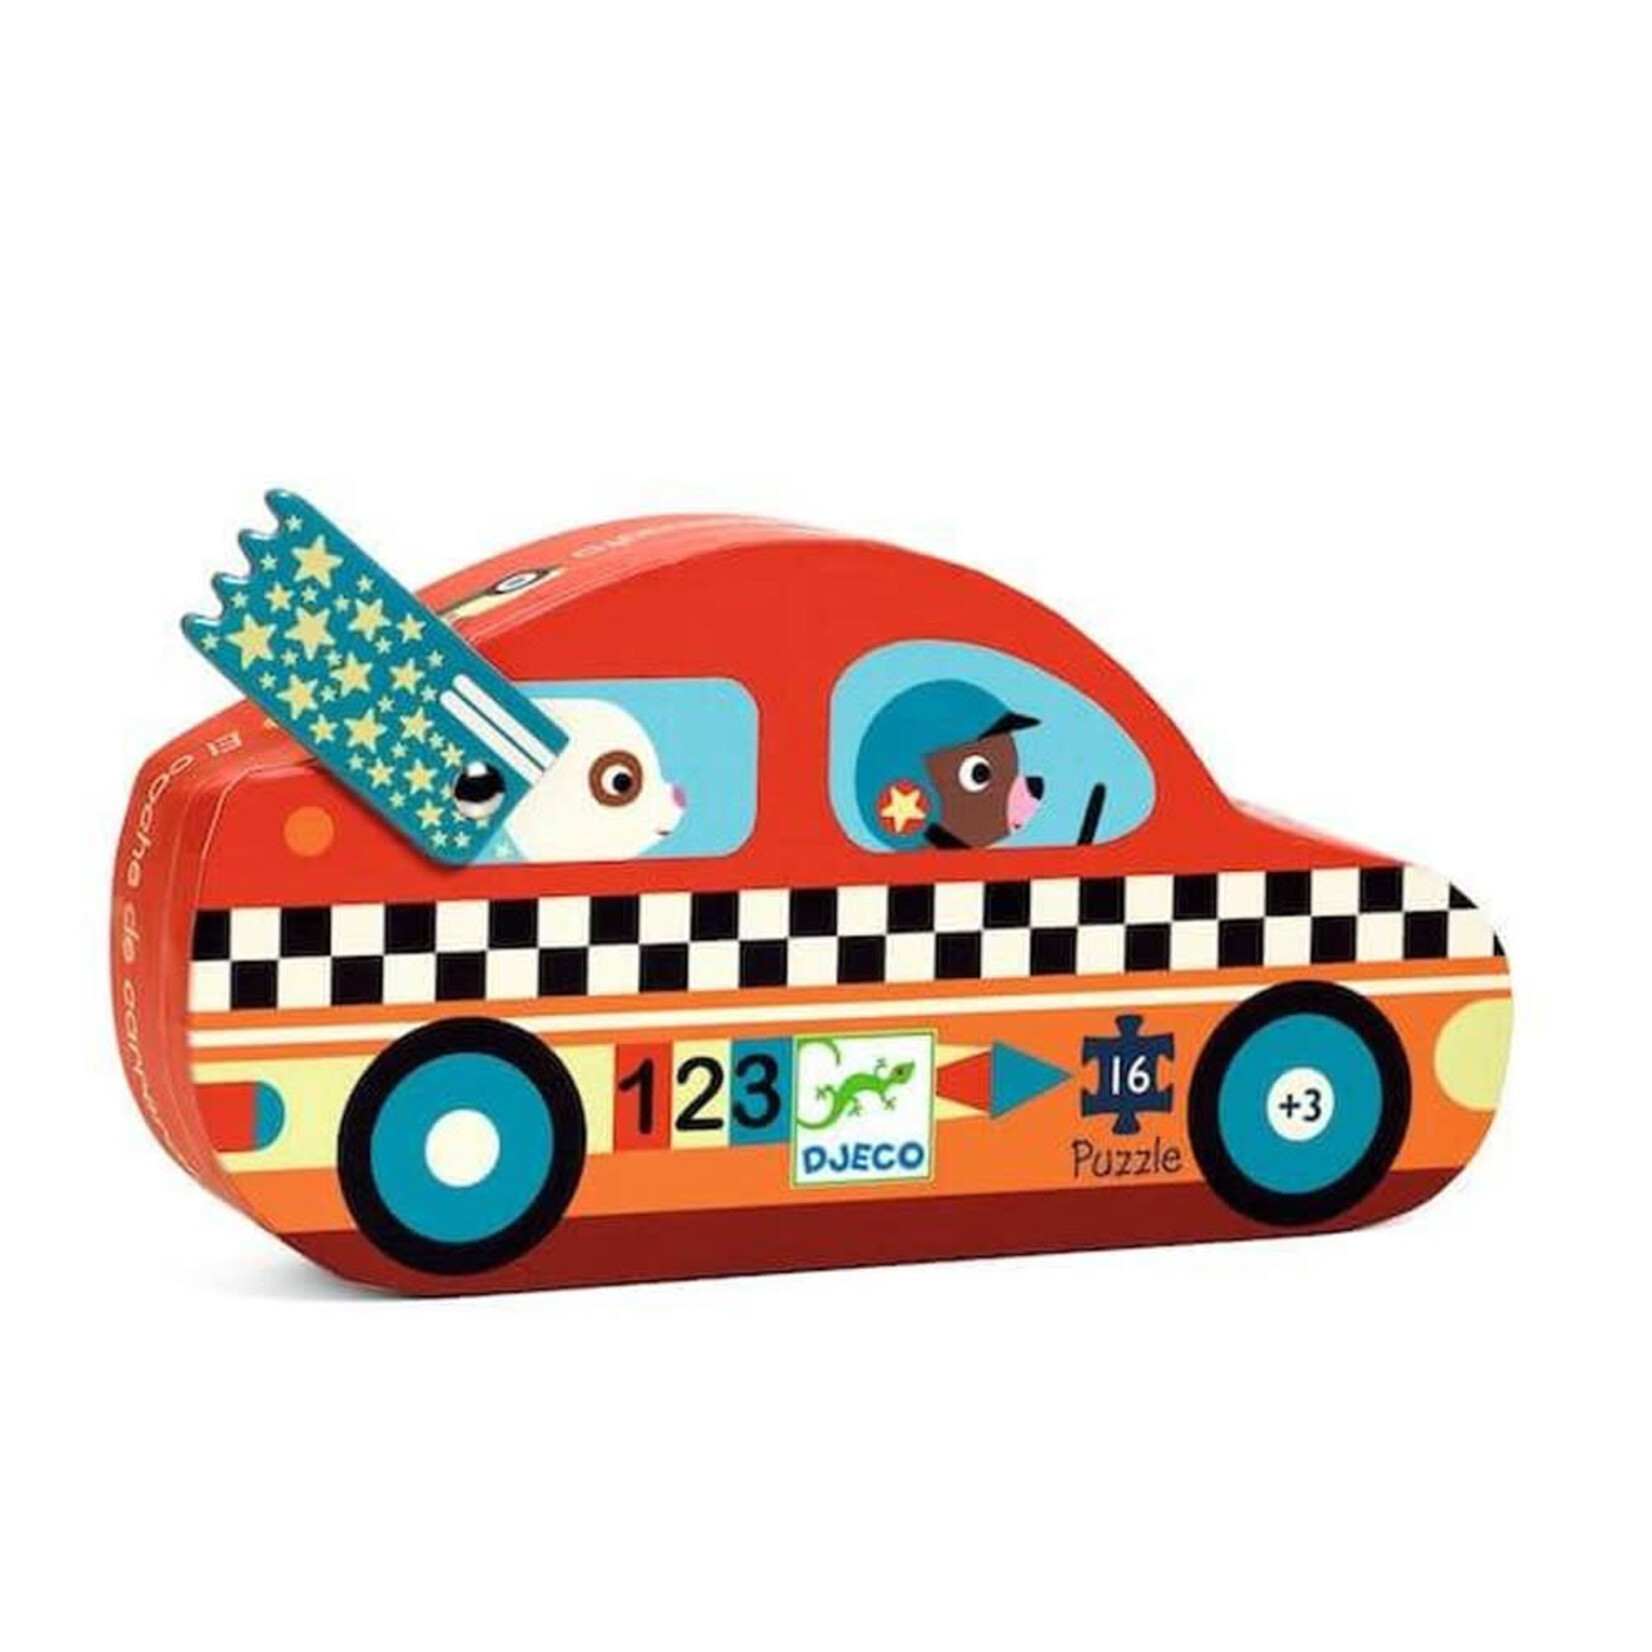 Djeco Djeco 7273 puzzel - De racewagen (16 stukjes)